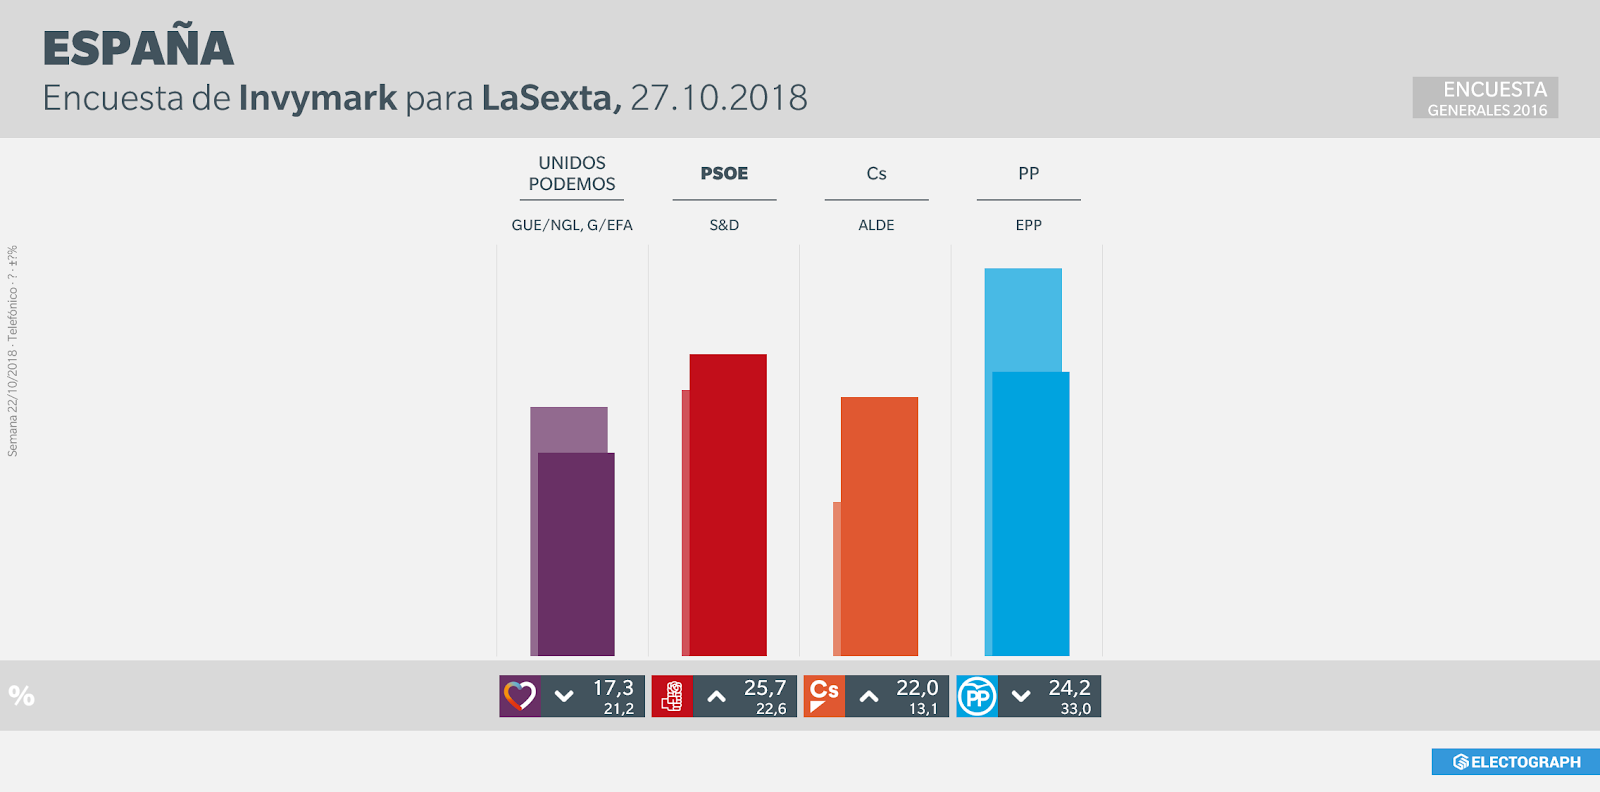 Gráfico de la encuesta para elecciones generales en España realizada por Invymark para LaSexta en octubre de 2018